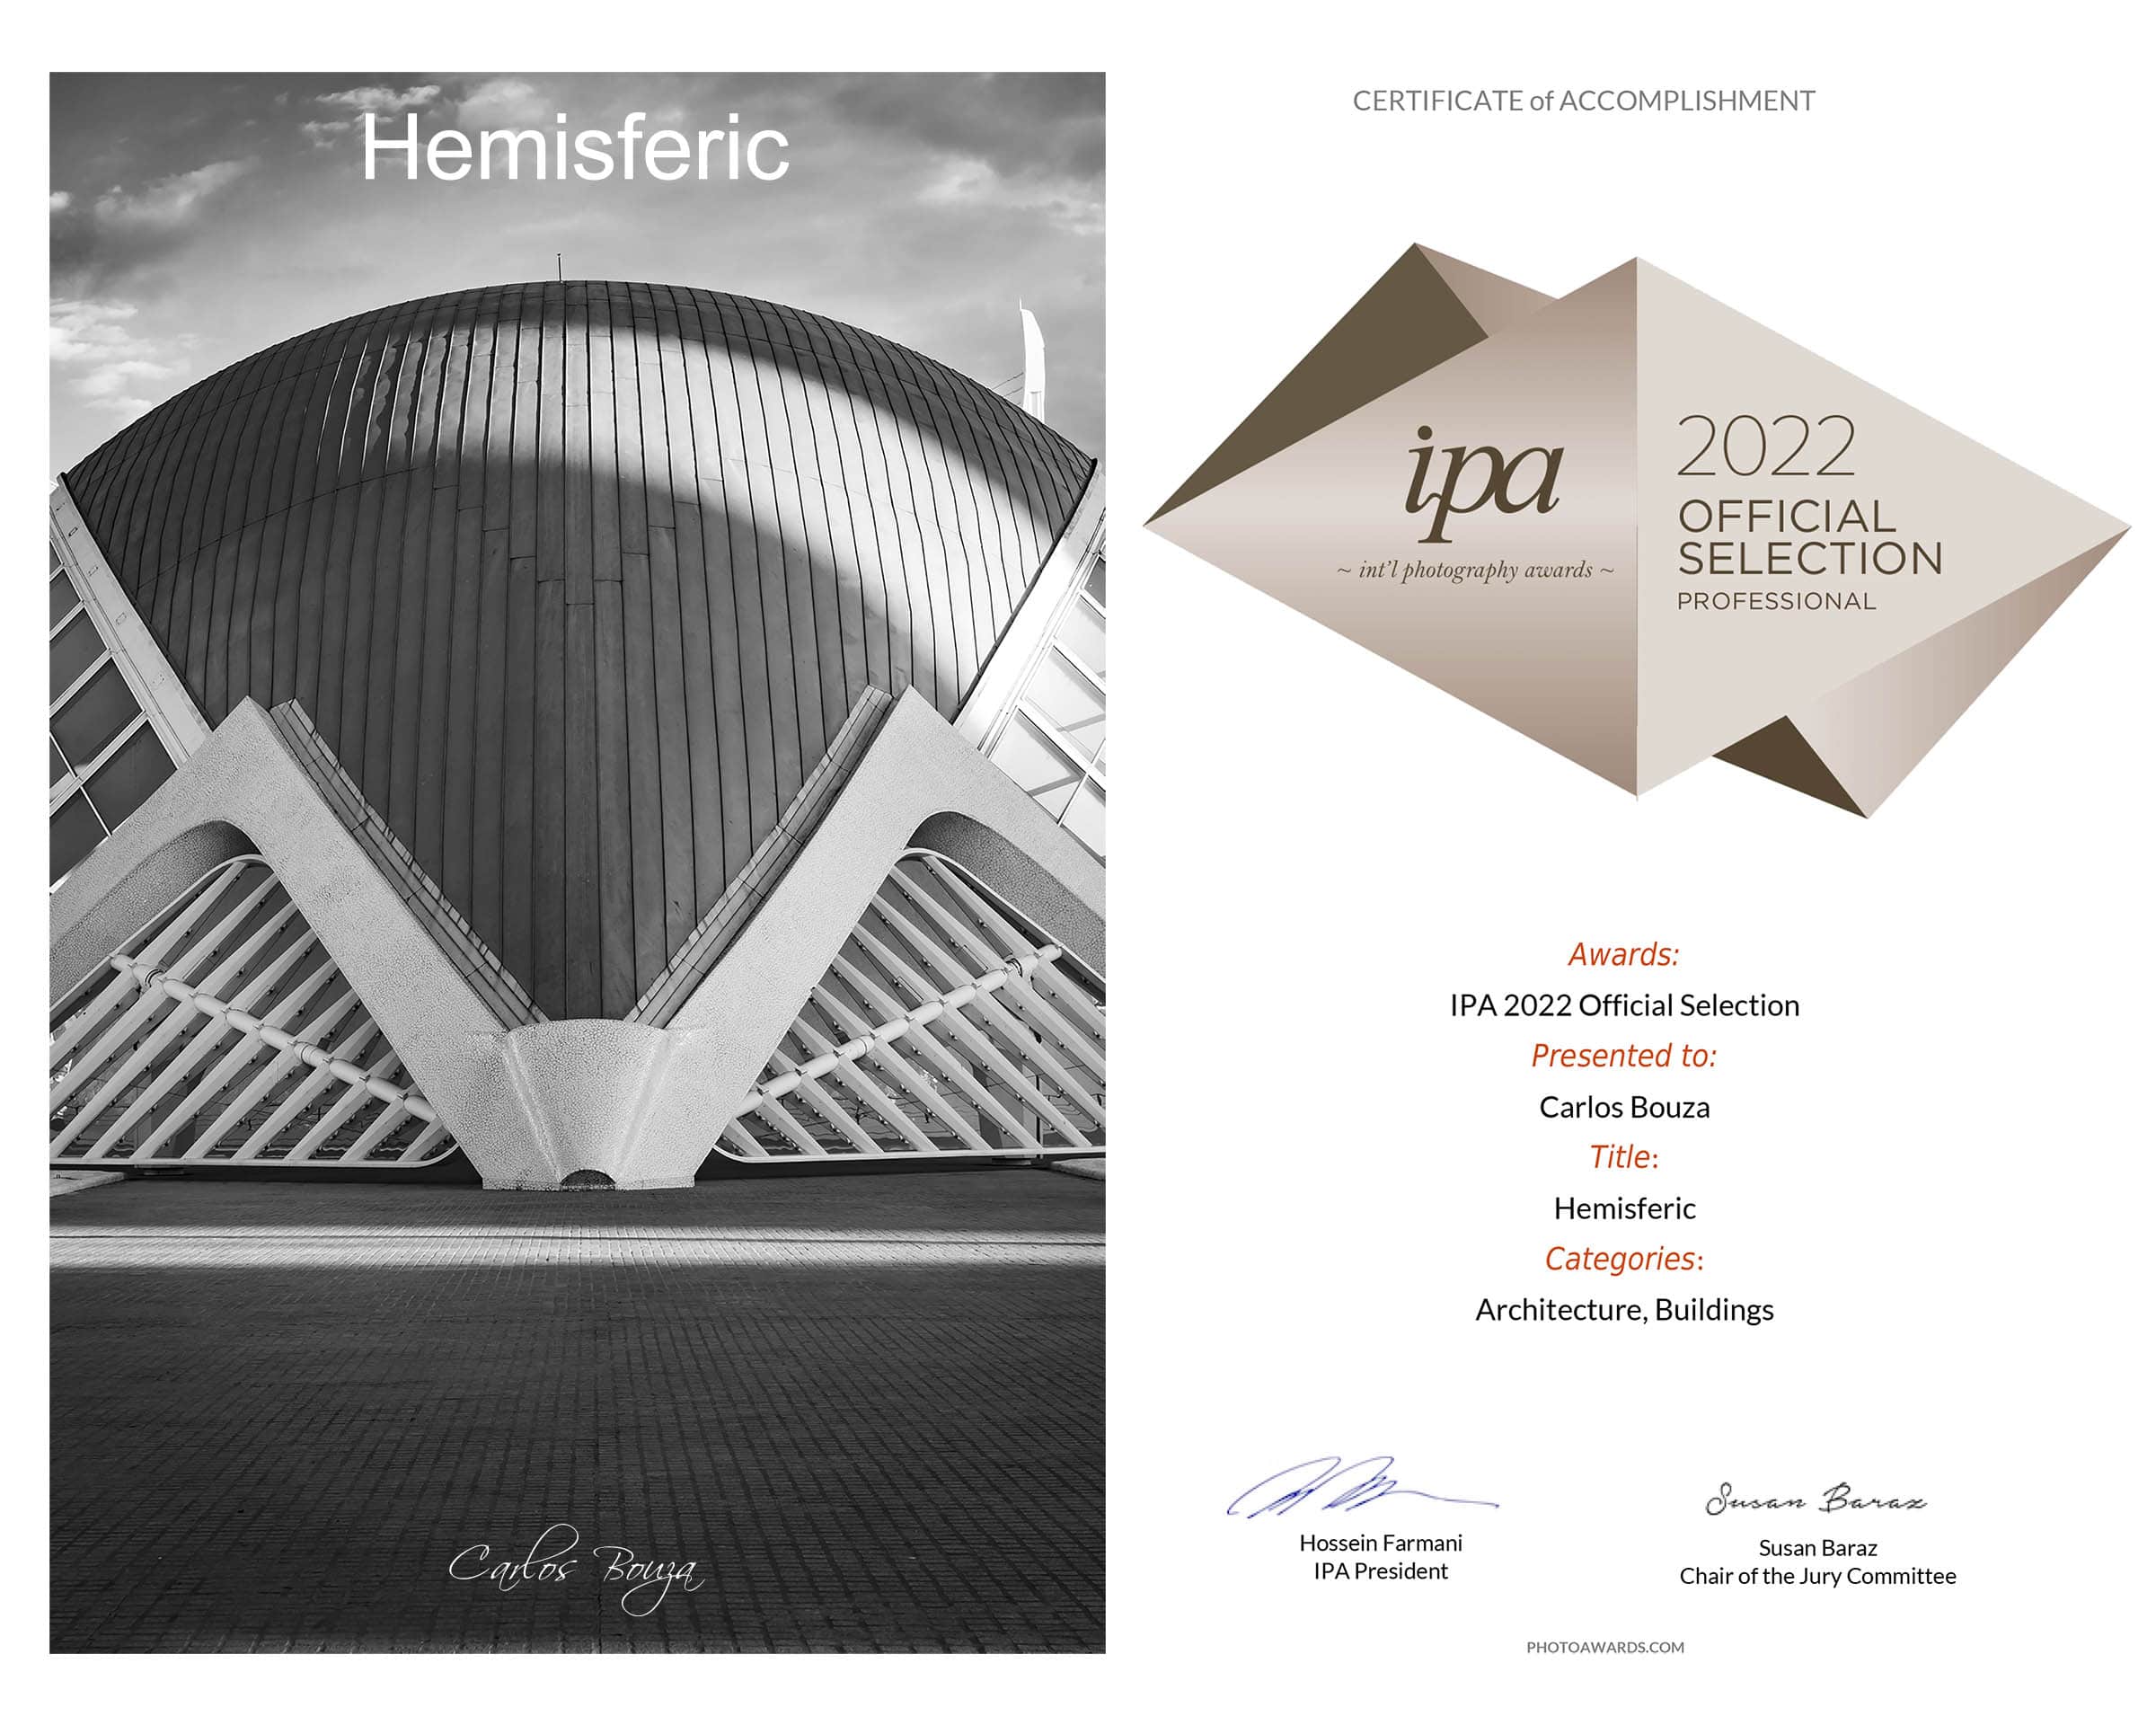 Mi fotografía "Hemisferic" seleccionada para los International Photograpy Awards 2022